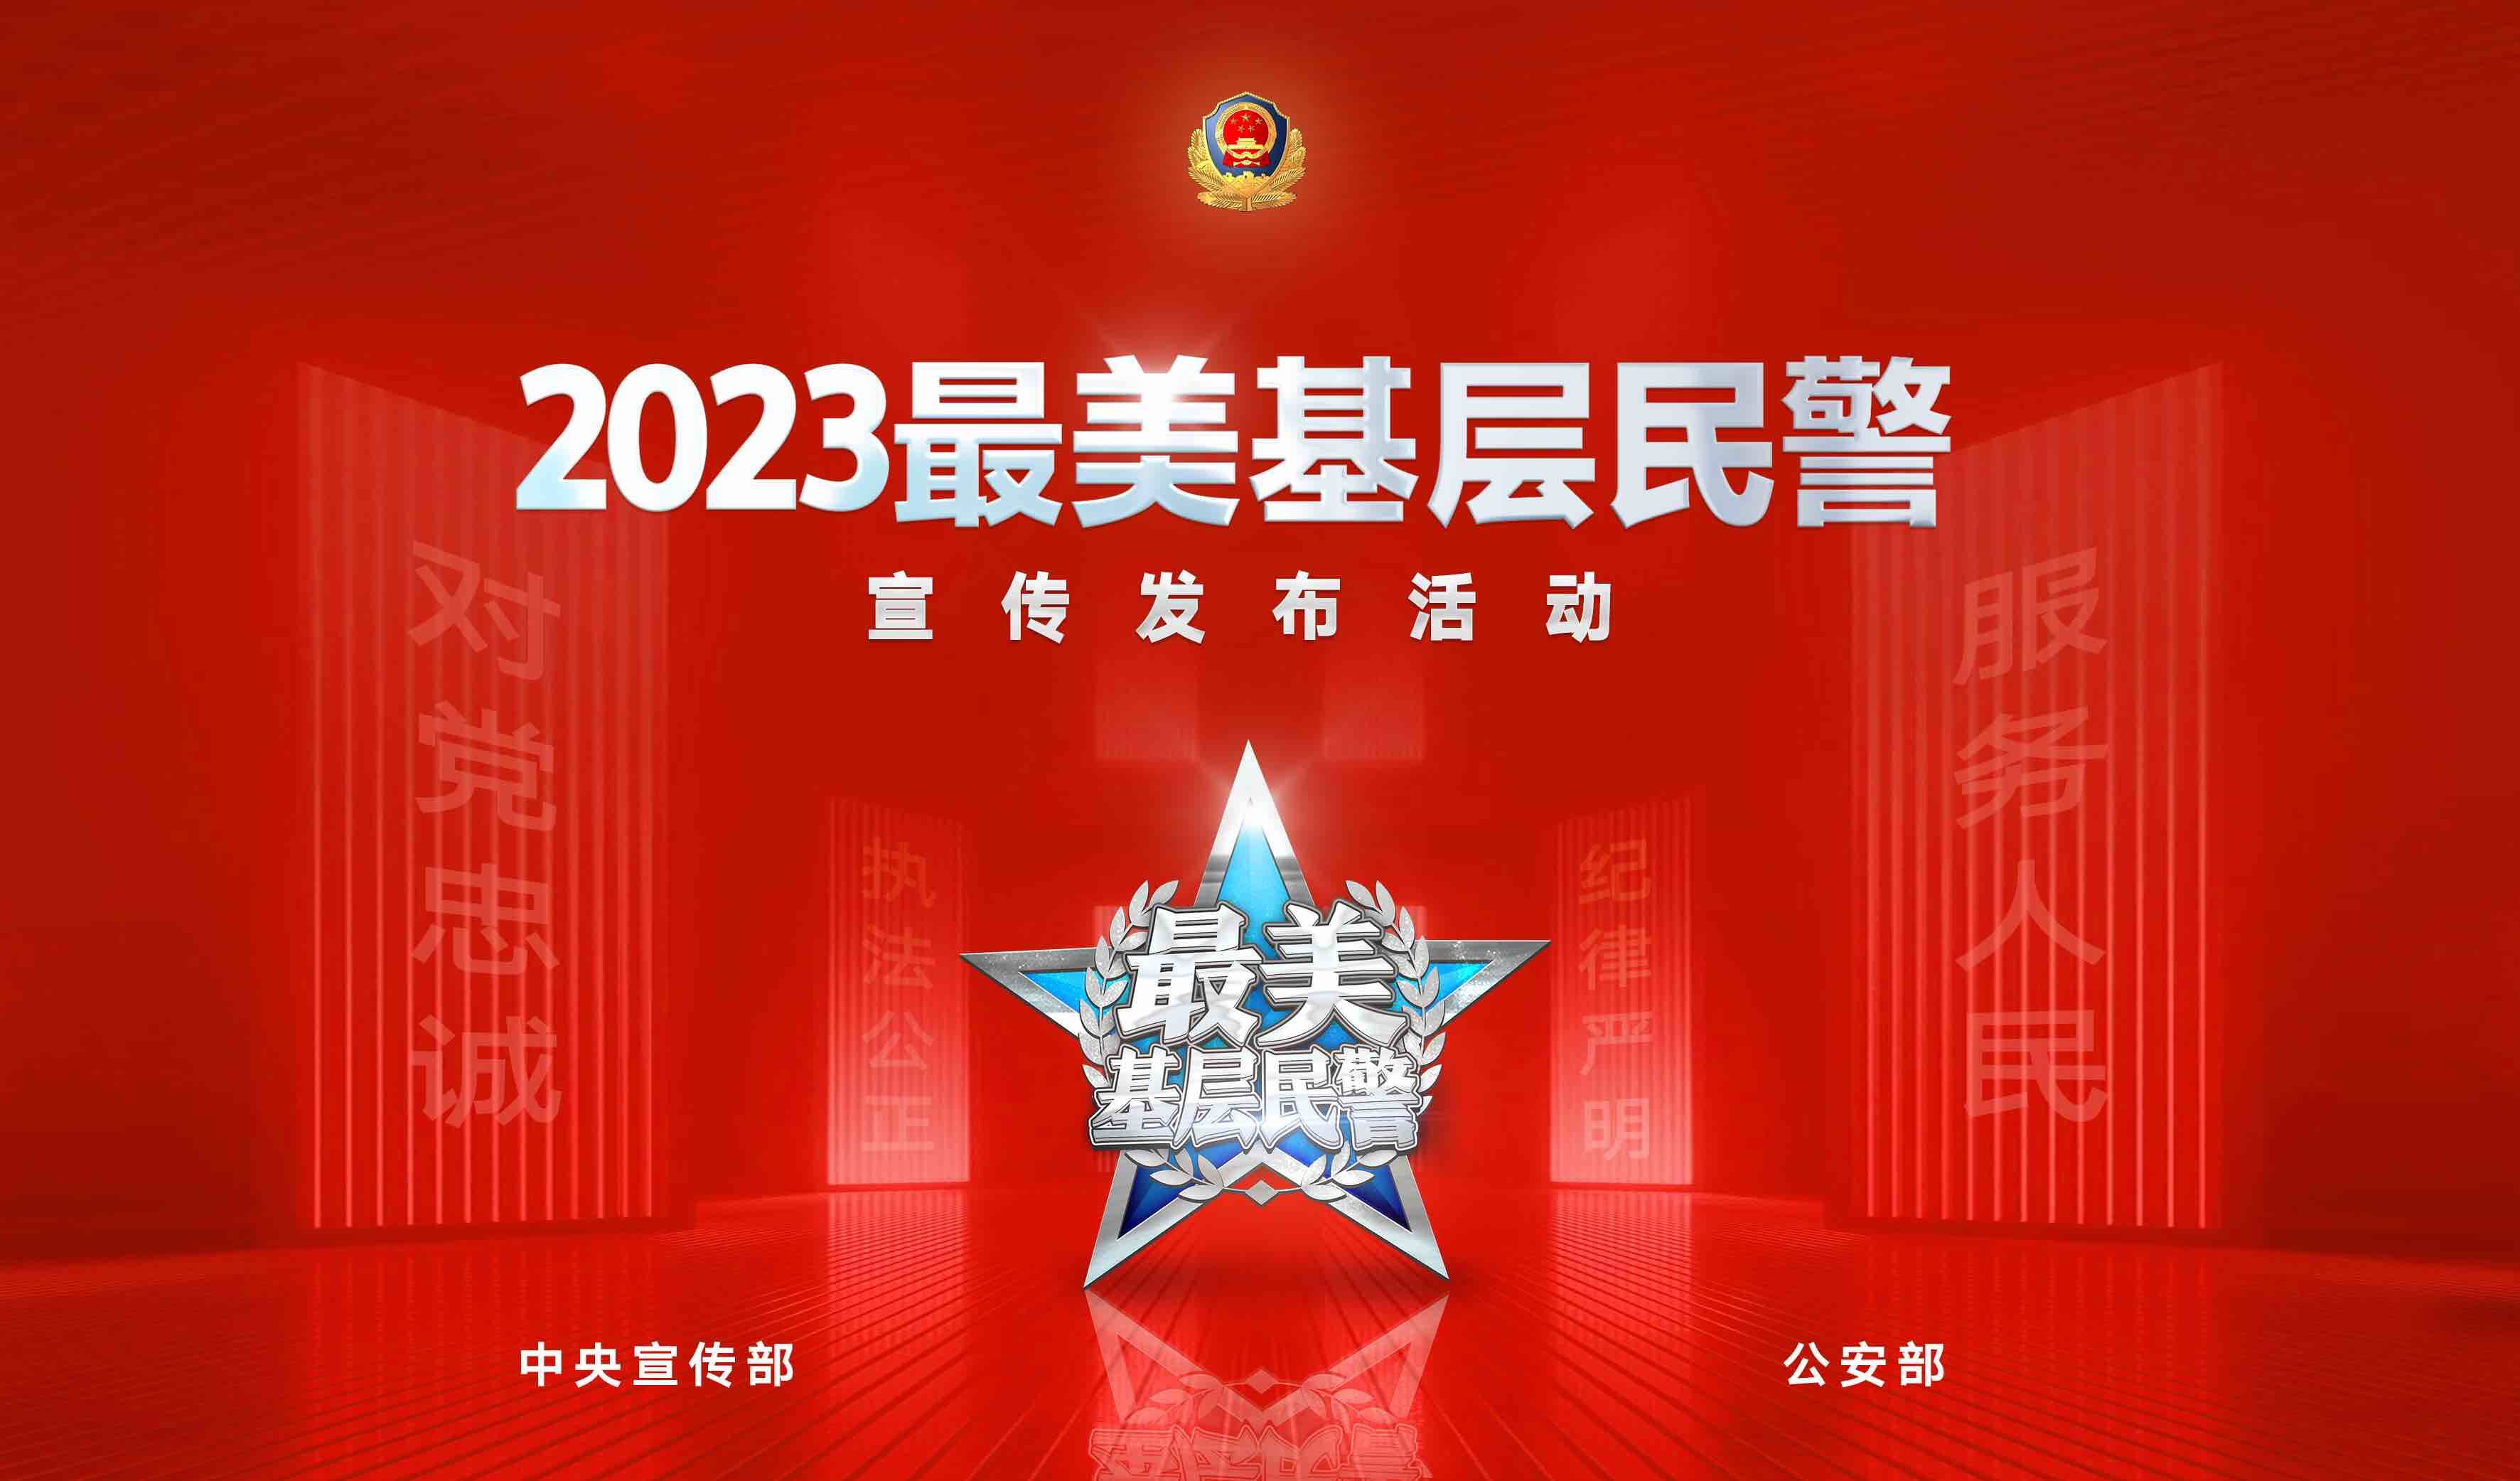 2023“最美基层民警” 宣传发布活动启动